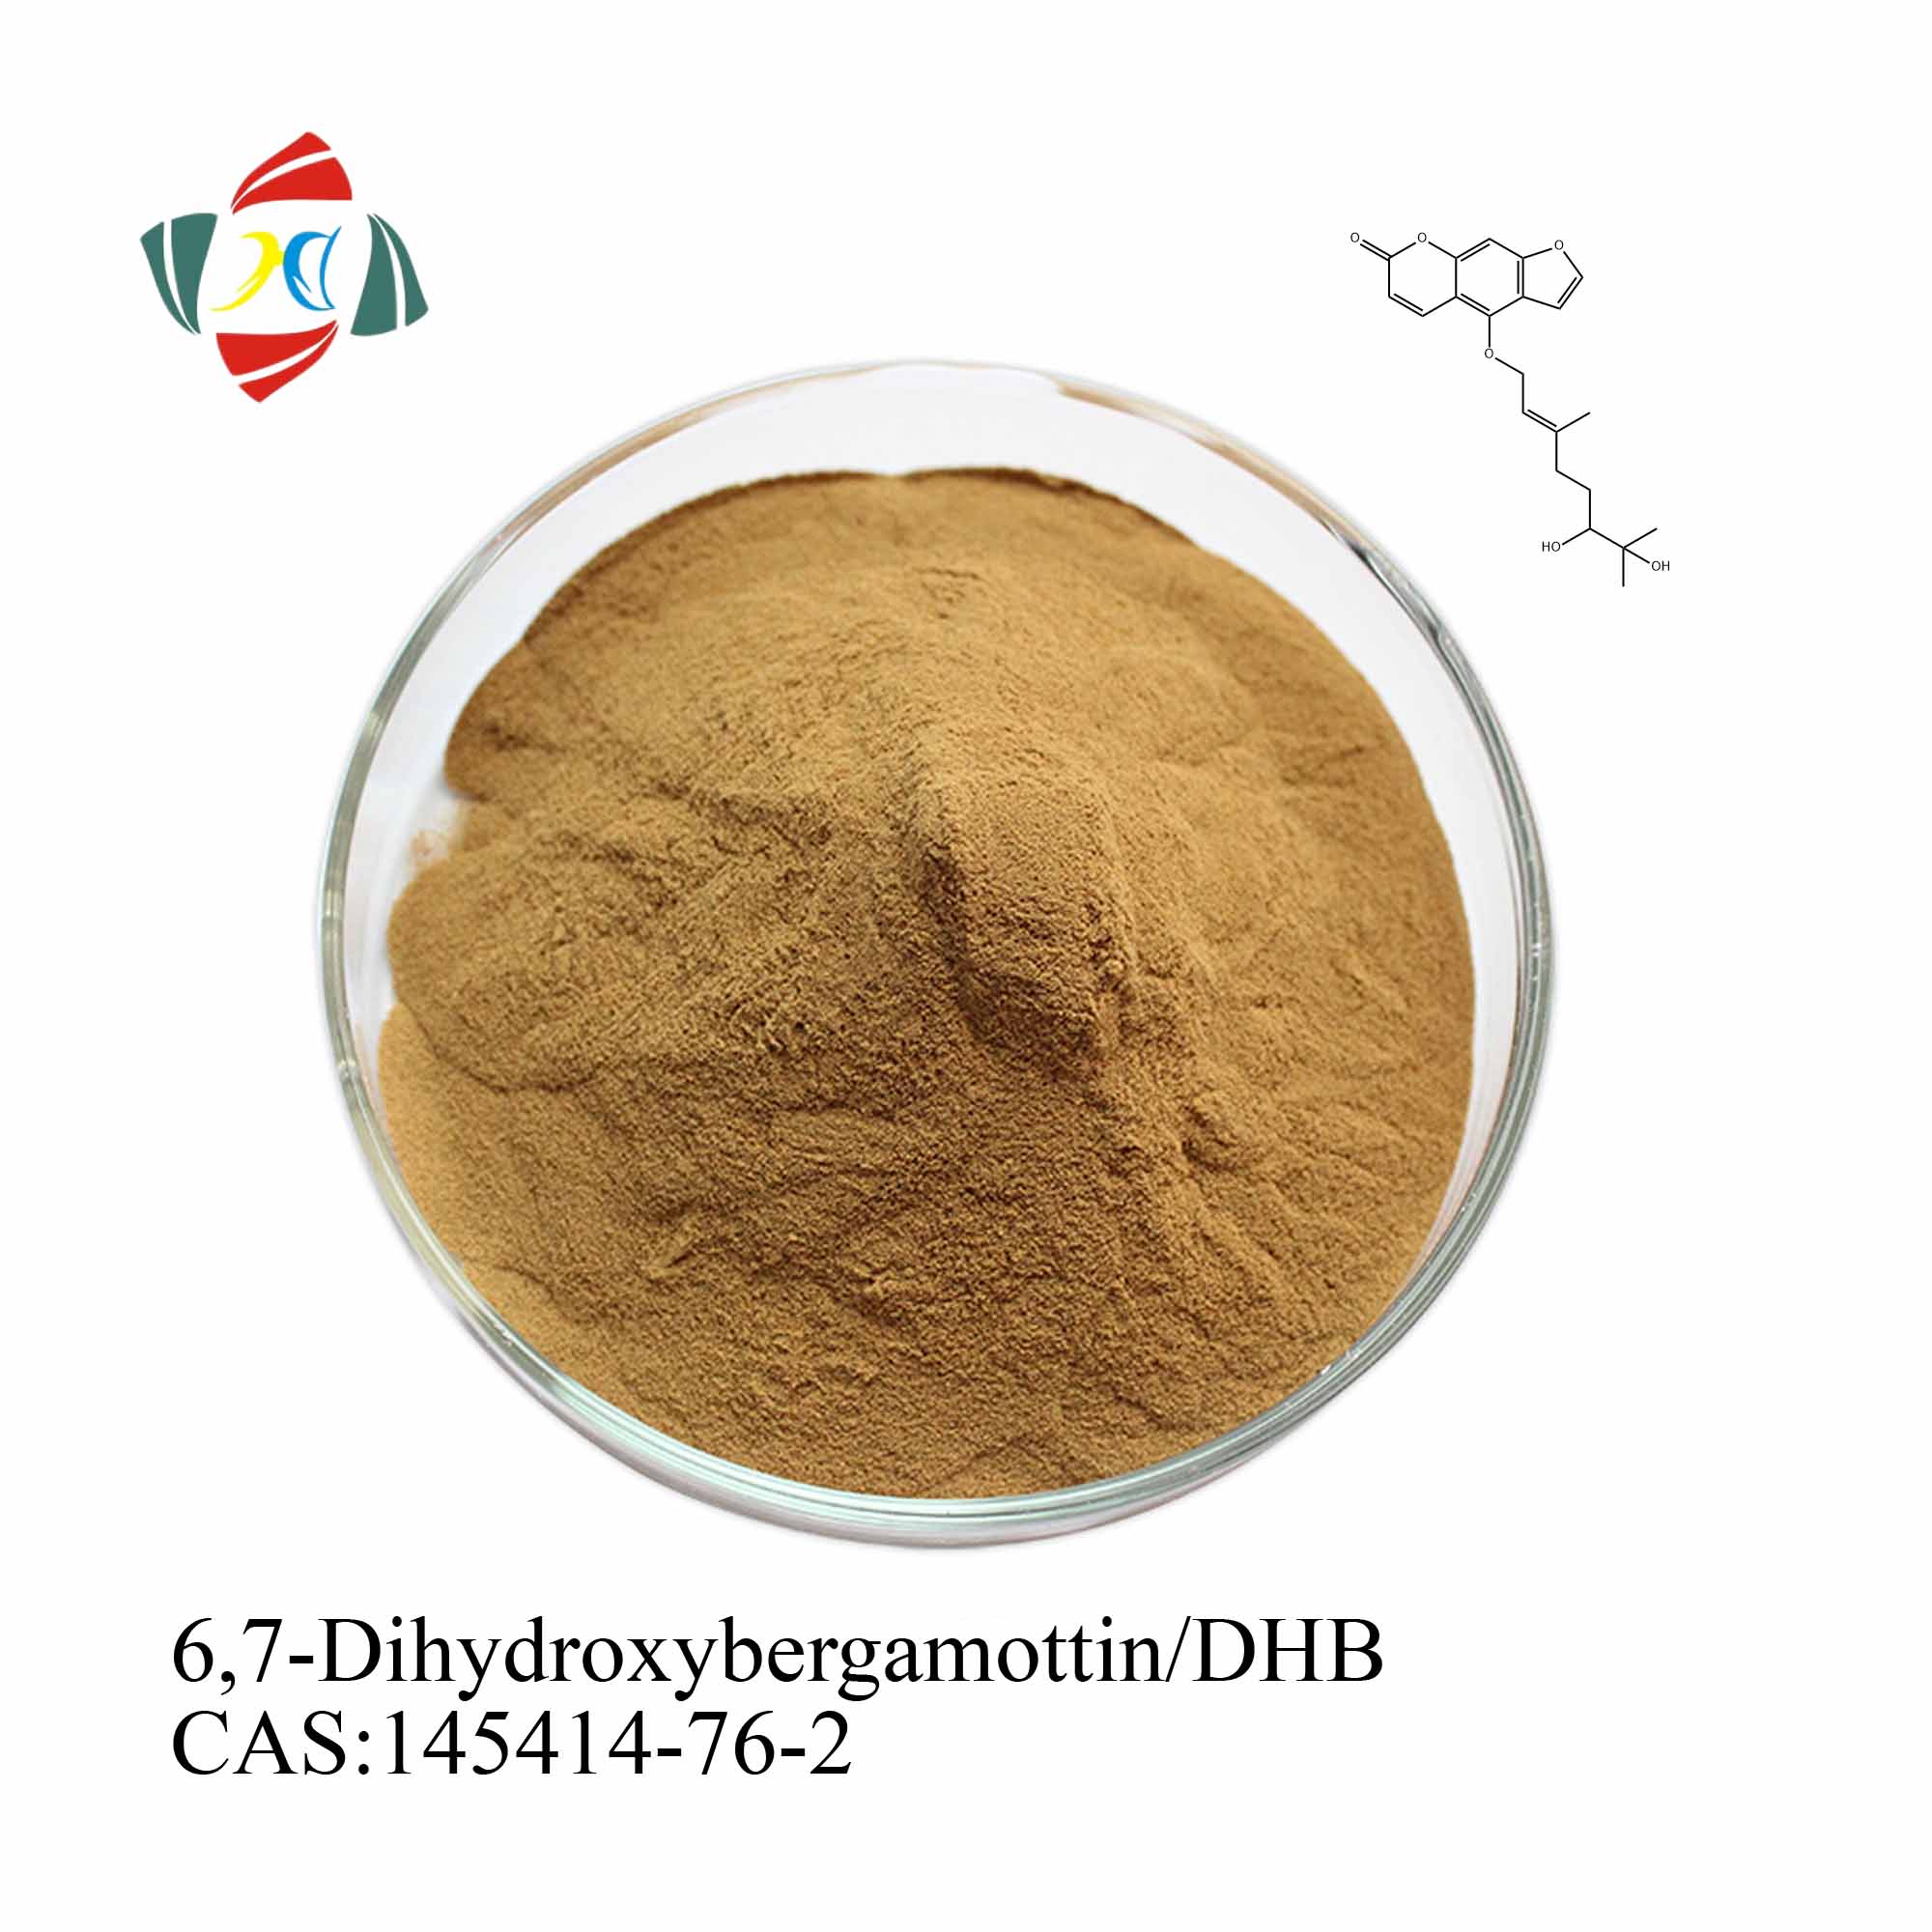 고품질 쐐기풀 뿌리 추출물 45% 6,7-Dihydroxybergamottin/DHB 95% 3,4-Divanillyltetrahydrofuran /DVTHF